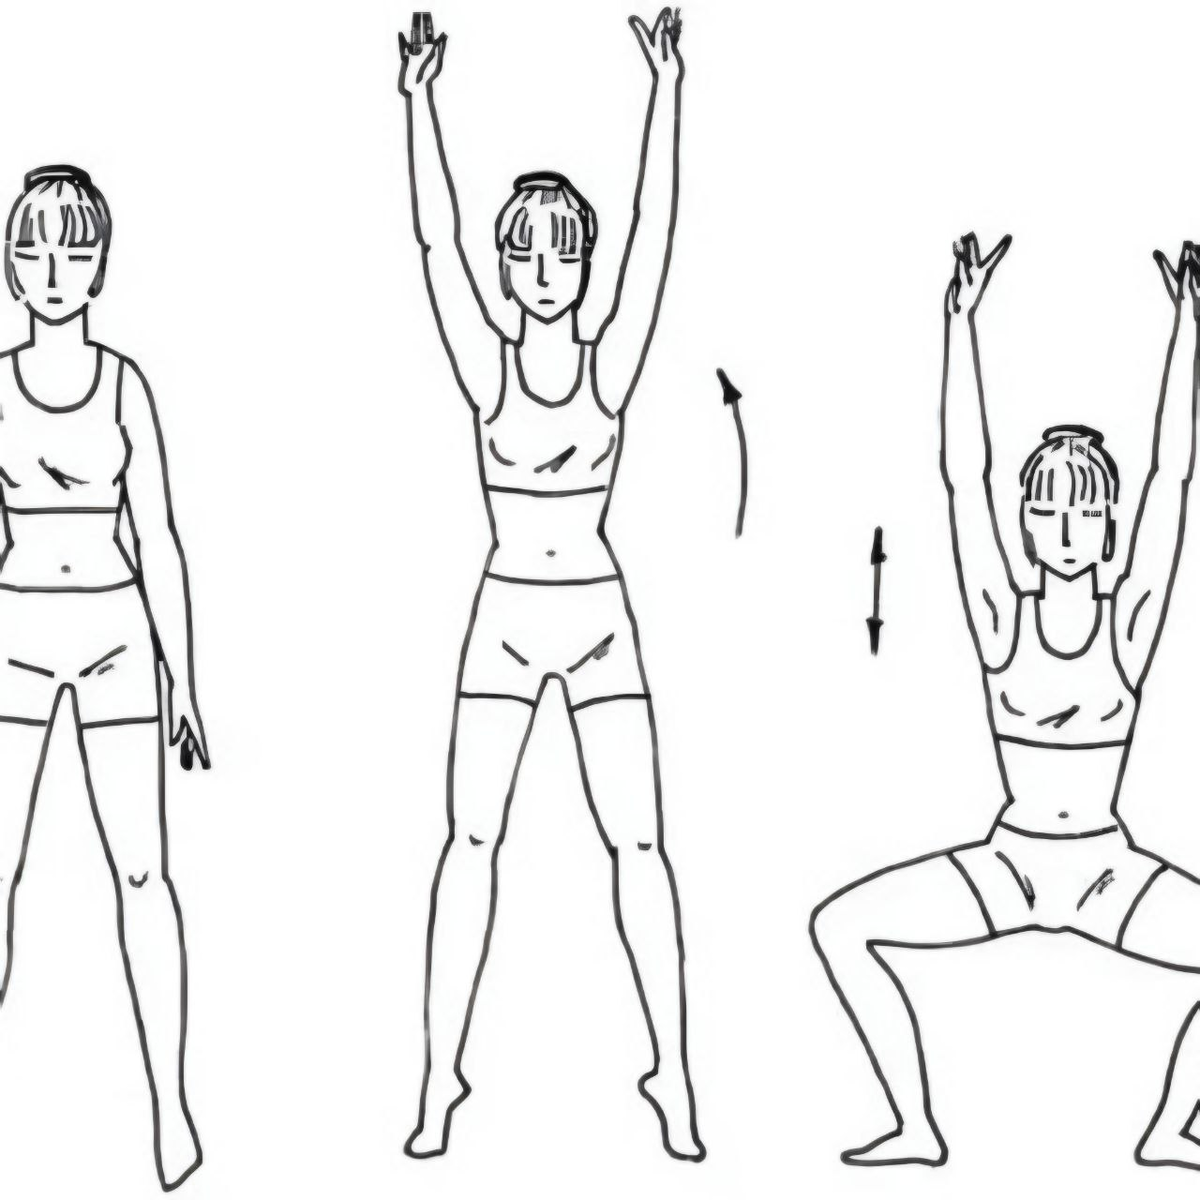 Упражнения стоя. Упражнение поднятие рук в стороны. Ноги на ширине плеч руки вдоль туловища. Упражнения для туловища и ног.